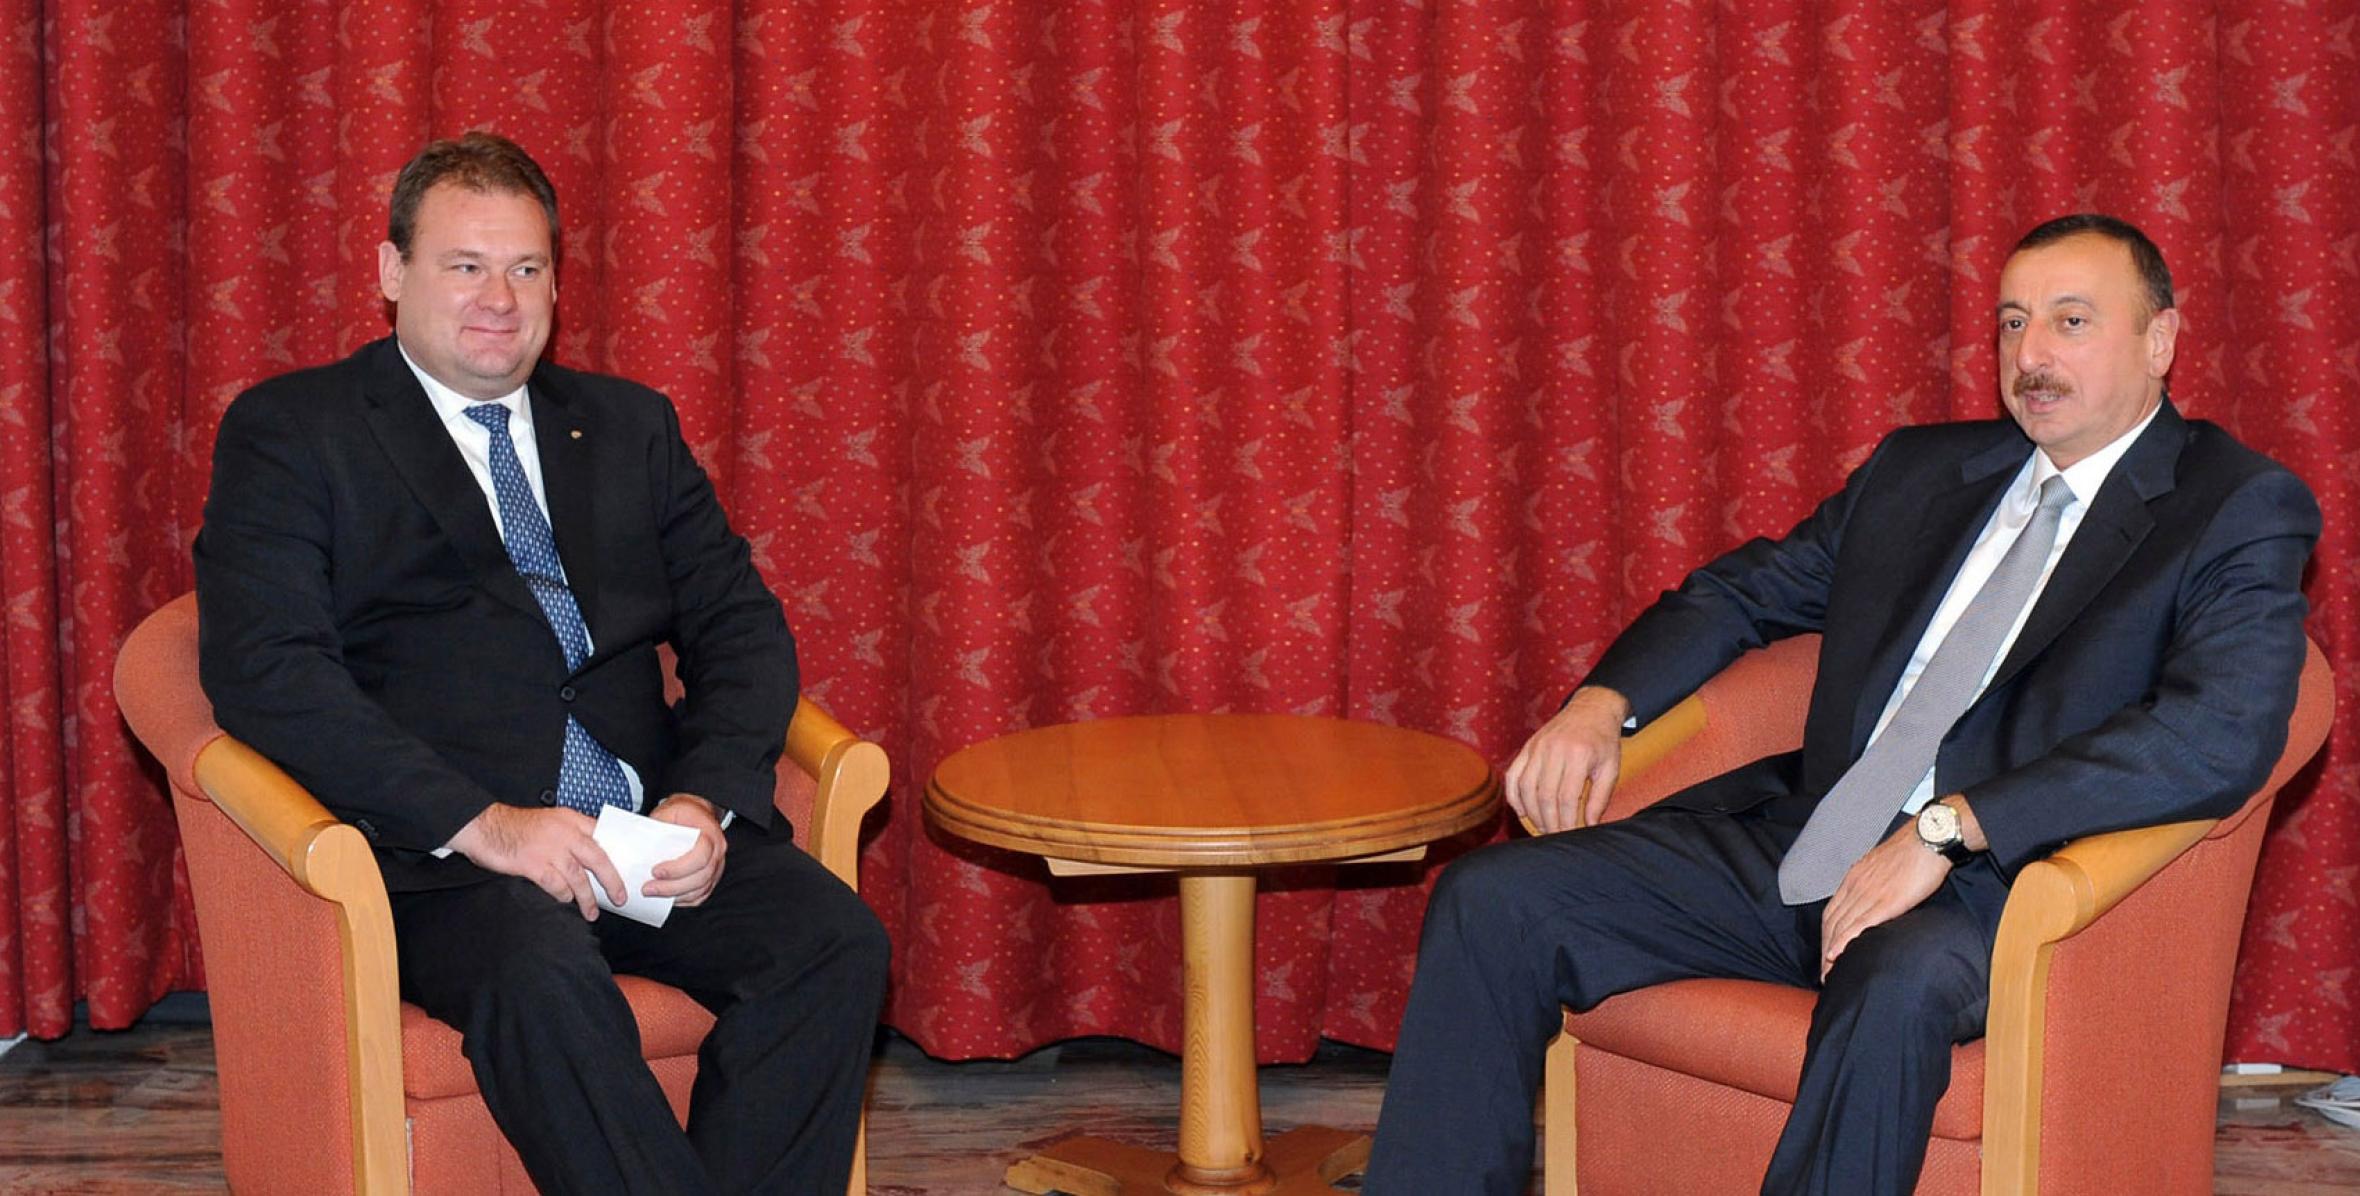 İlham Əliyev “TeliaSonera Eurasia” şirkətinin prezidenti Tero Kivisaari ilə görüşmüşdür